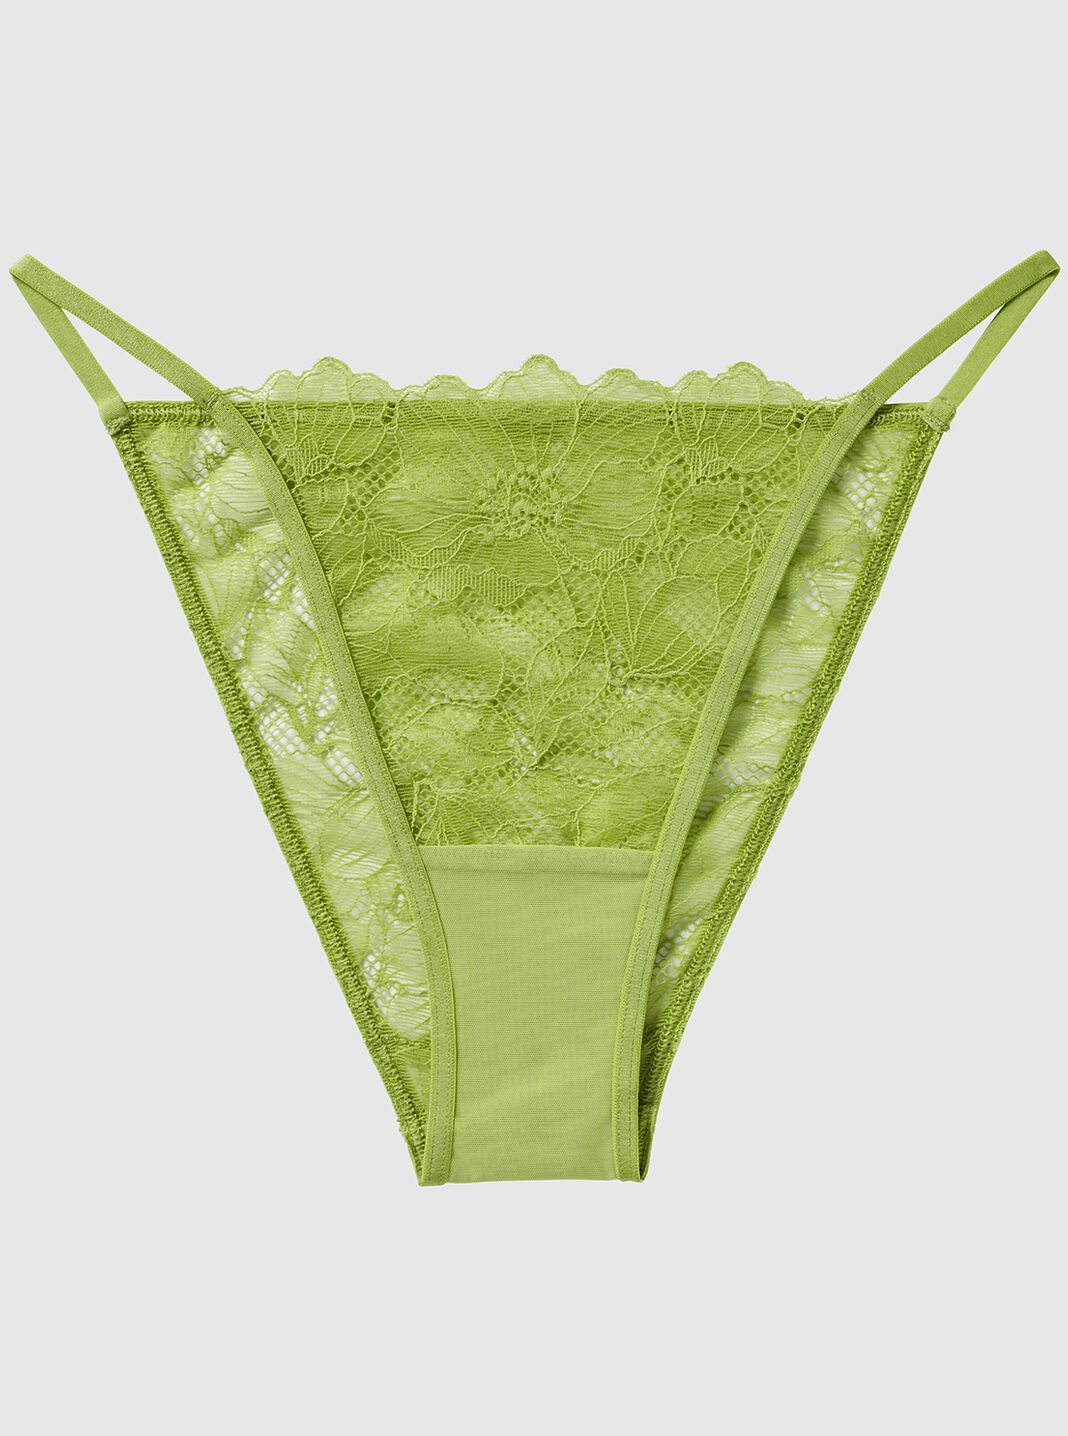 Underwear Wicking Mid Waist Underpants Womens Soft Sweatproof Underwear  Green Lime Lemon Underwear for Women, Green Lime Lemon, XS : :  Fashion